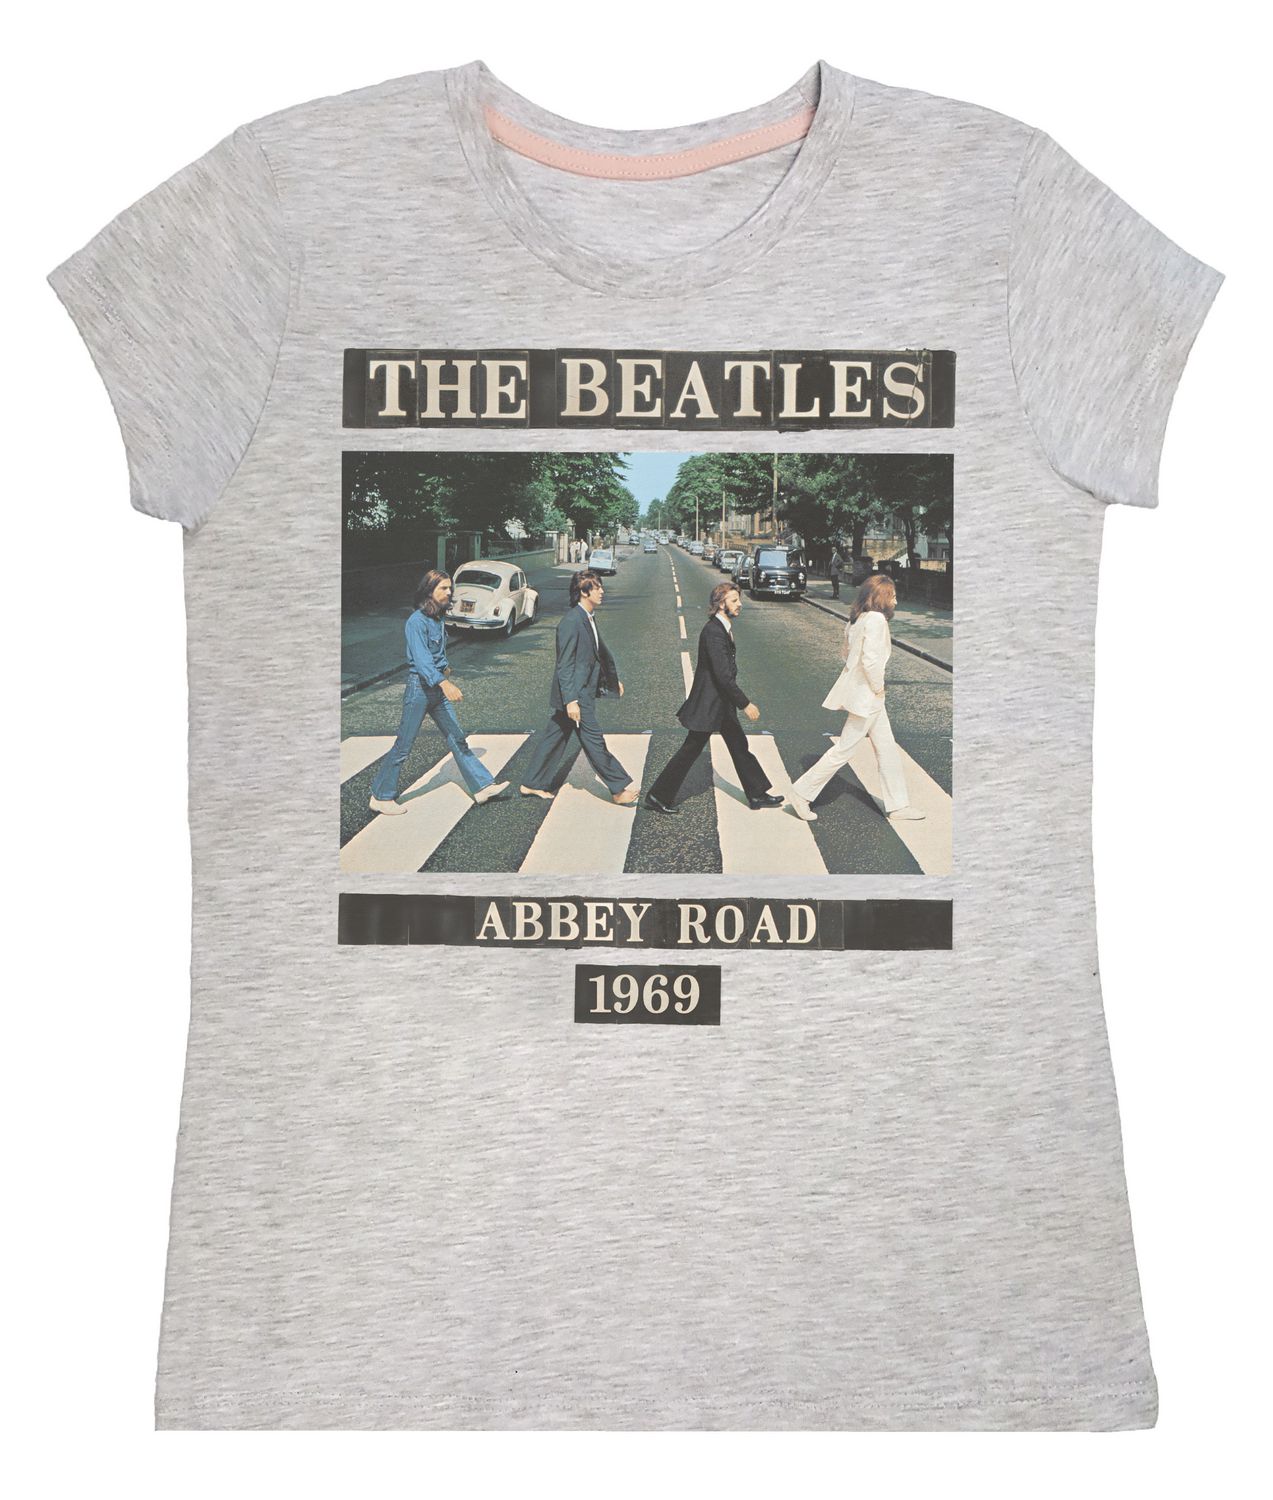 The Beatles Girls' Short Sleeve T-Shirt | Walmart Canada